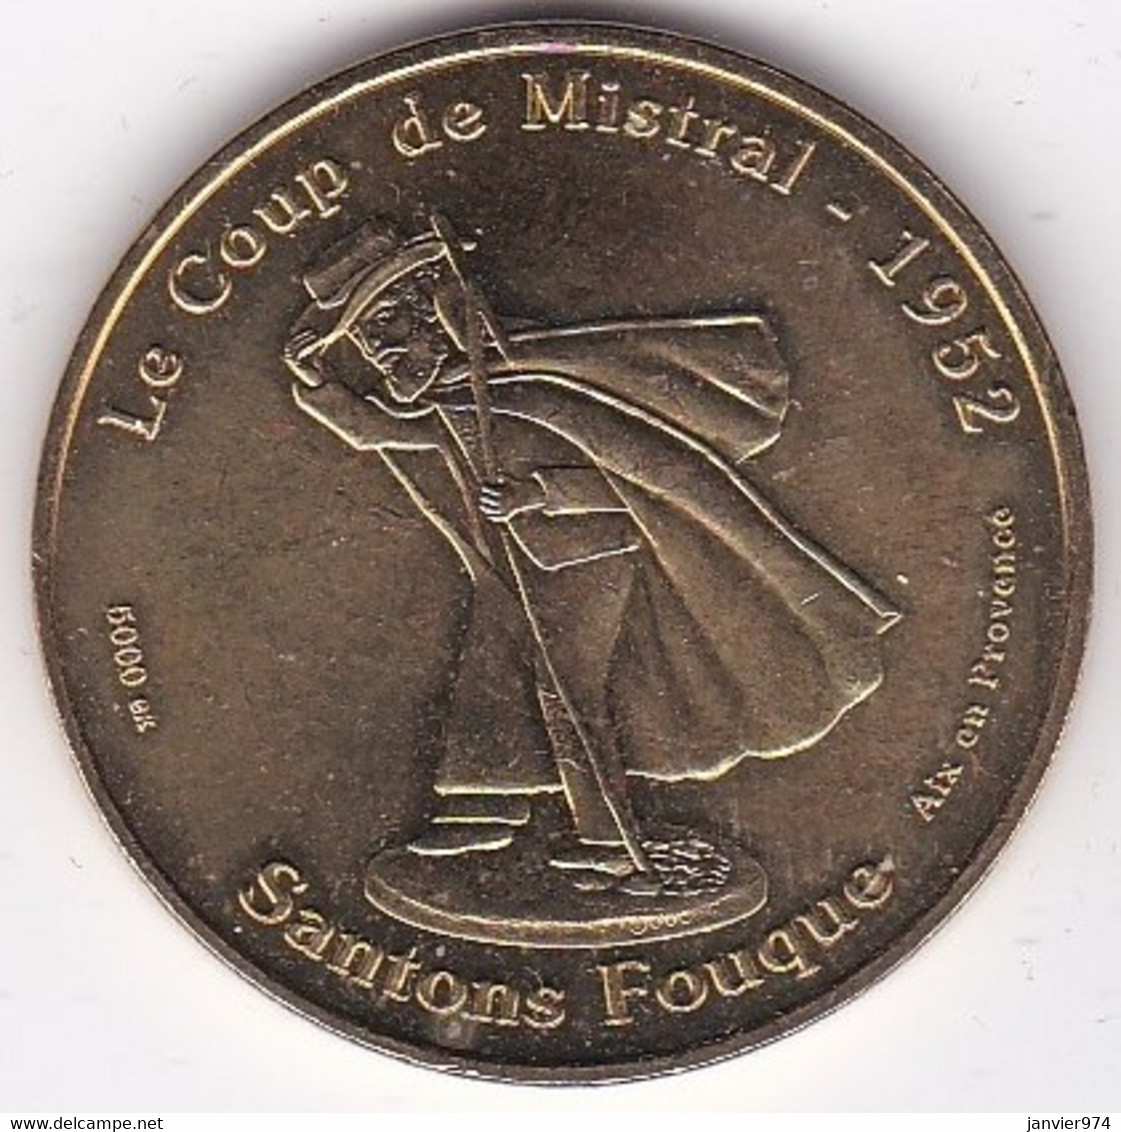 13. Aix En Provence. Santons Fouque, Le Coup De Mistral 2009. MDP - 2009